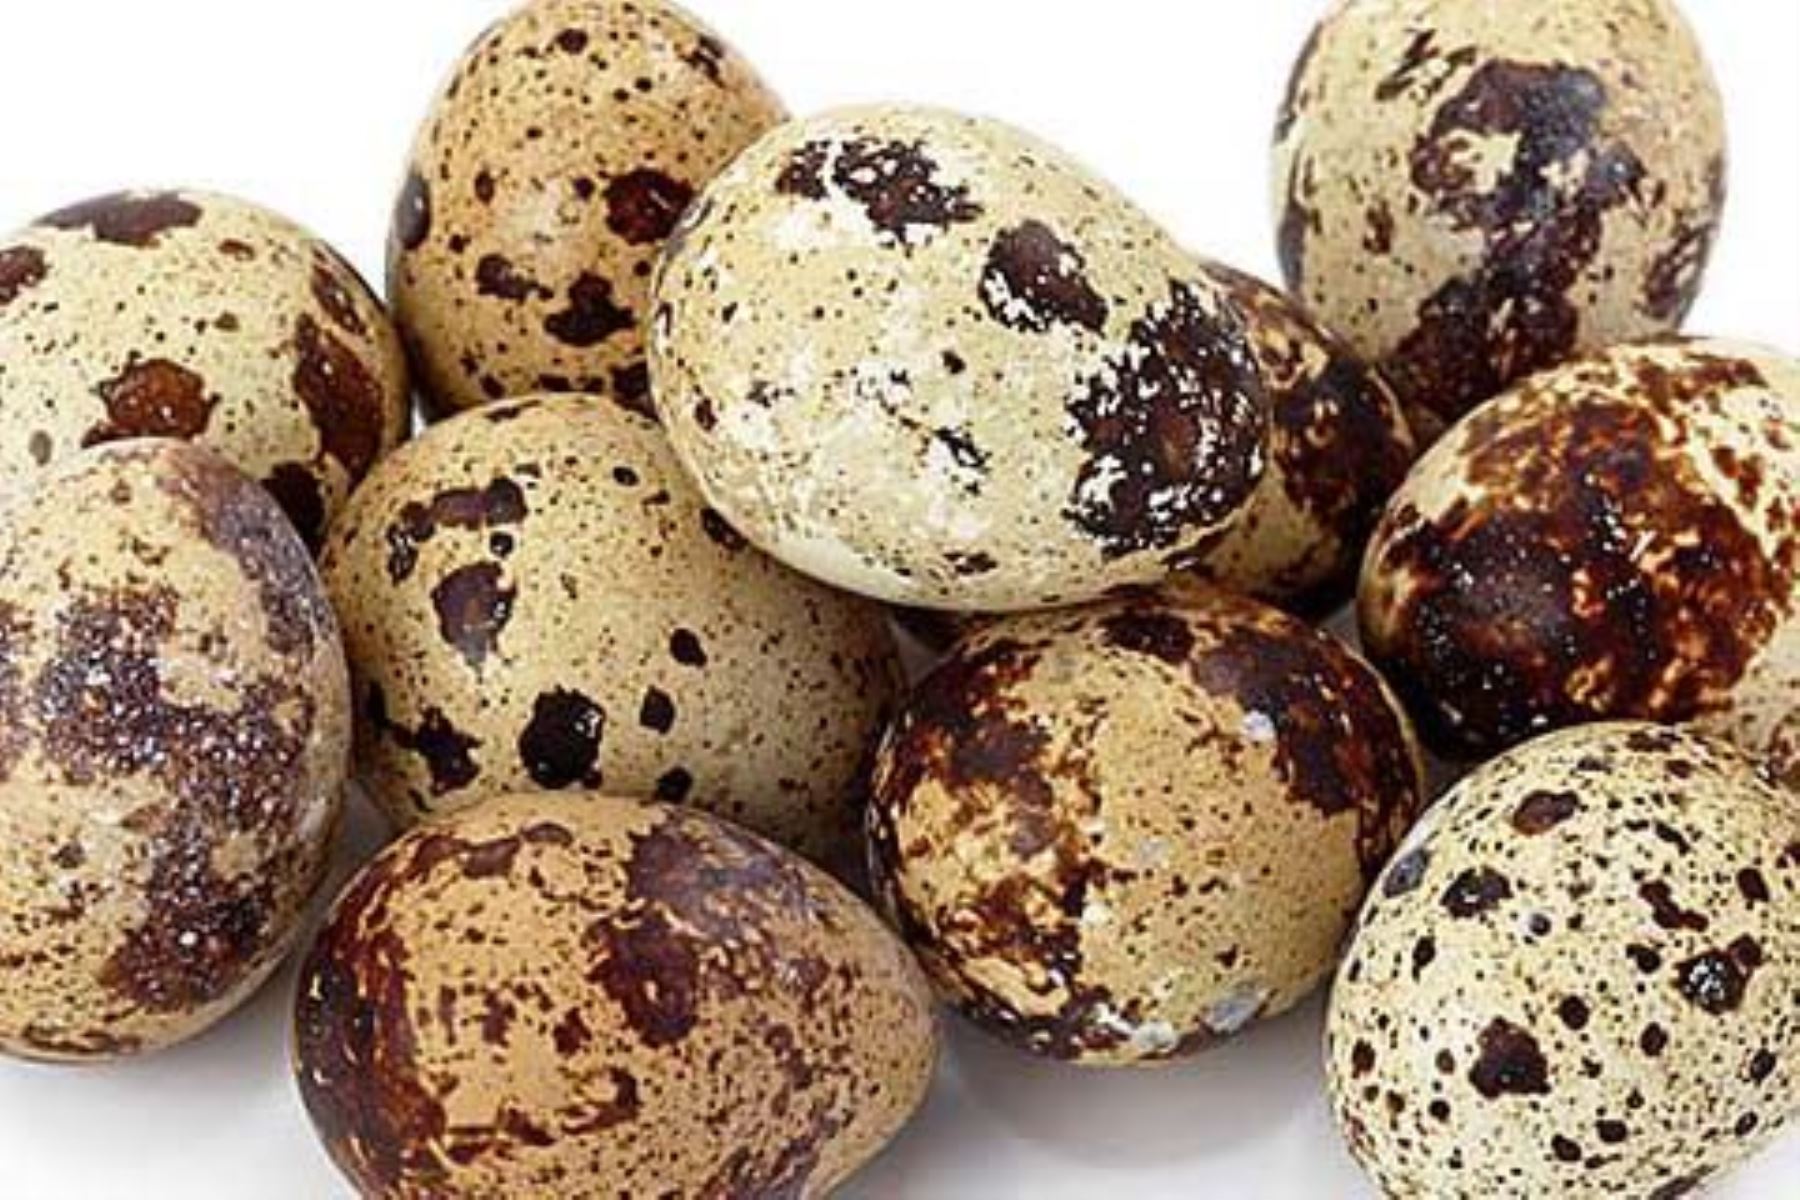 El huevo de codorniz es un superalimento de creciente consumo en el Perú que contiene vitamina D, nutriente clave para fortalecer el sistema inmune frente a infecciones como el covid-19. ANDINA/Difusión